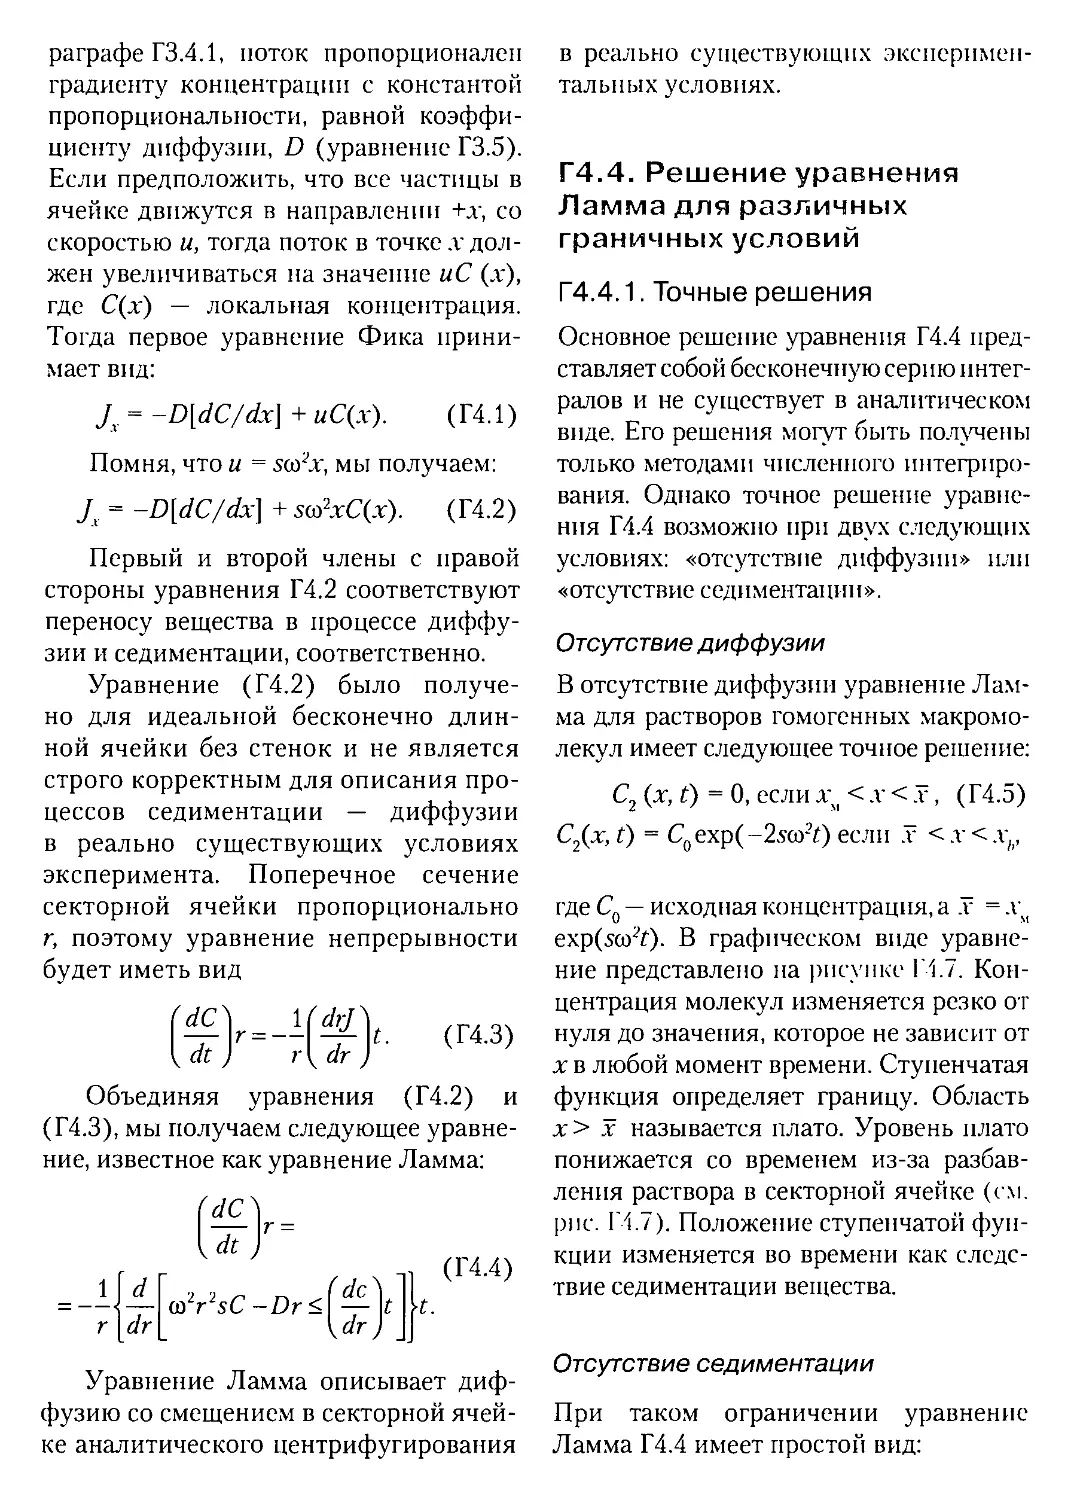 Г.4.4. Решение уравнения Ламма для различных граничных условий